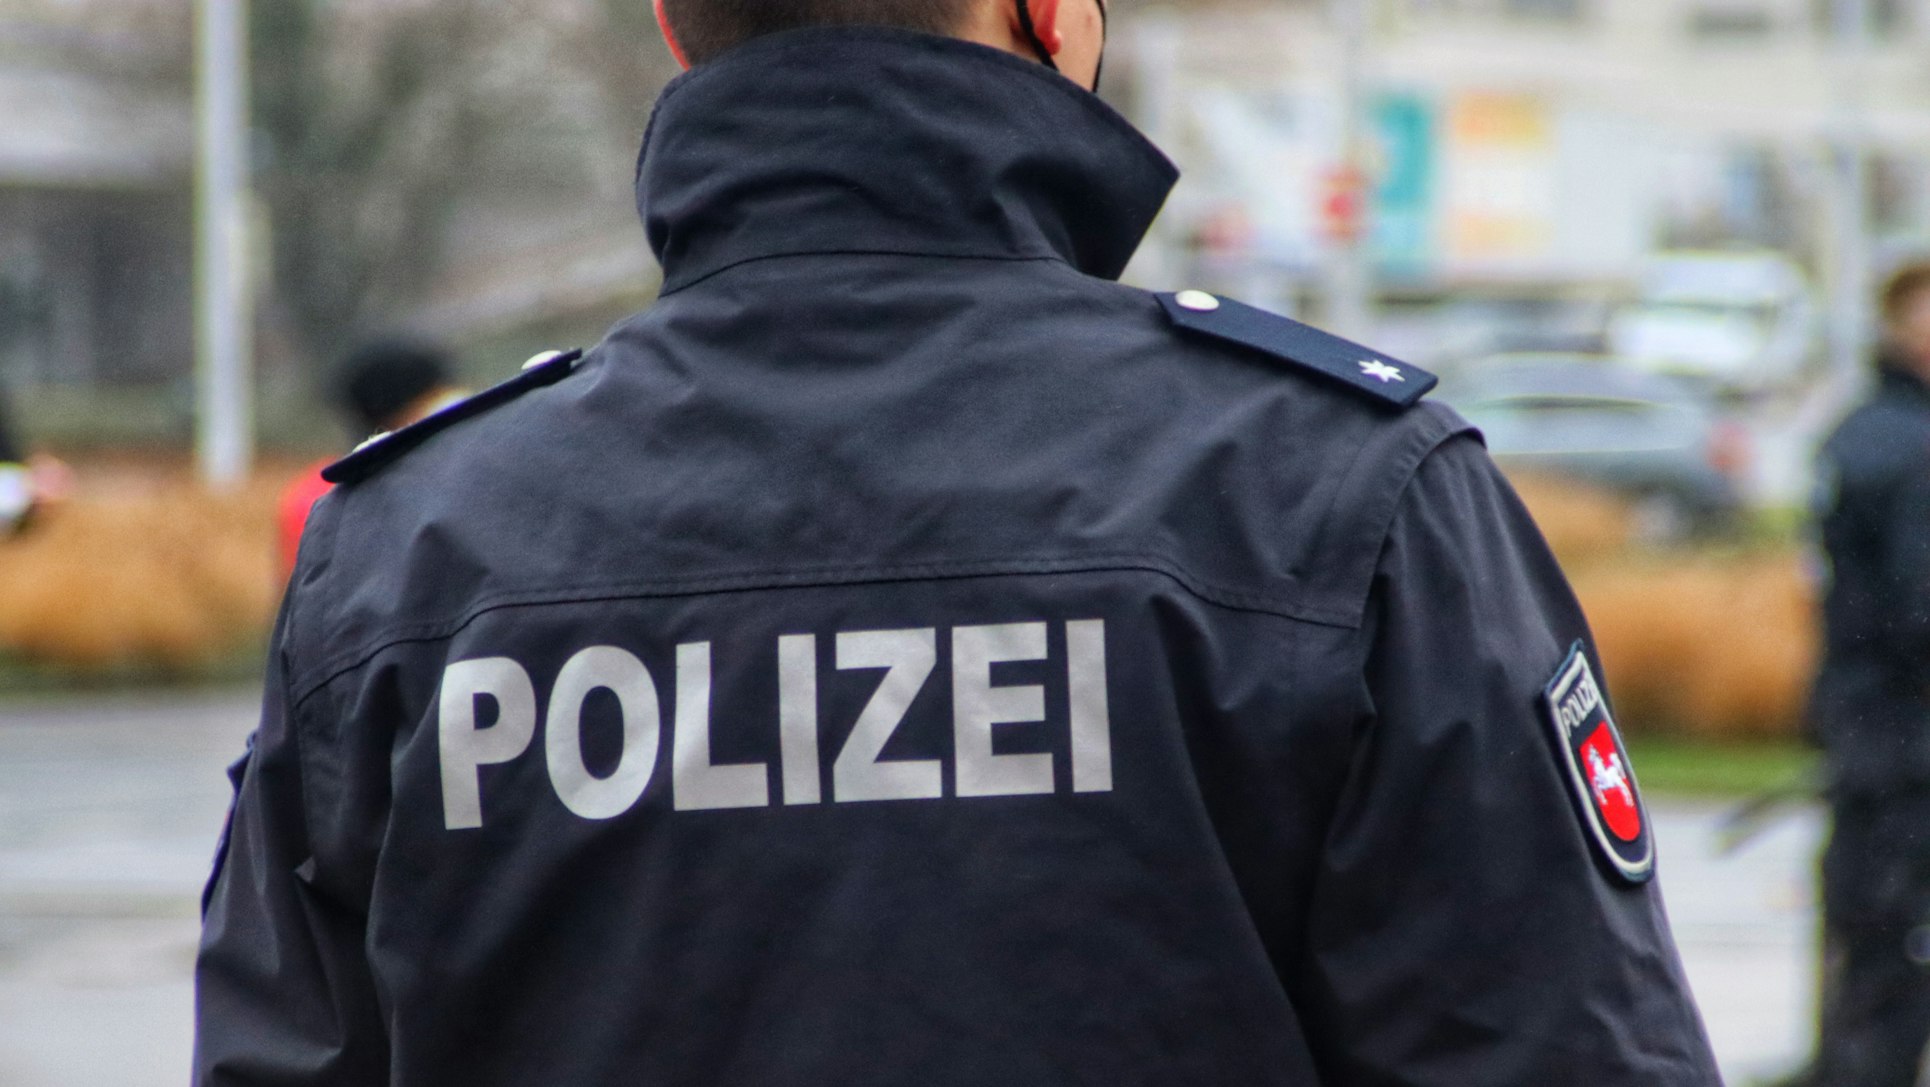 Υπάρχει αυξημένος κίνδυνος τρομοκρατίας στη Βαυαρία; Τι λένε οι Αρχές;